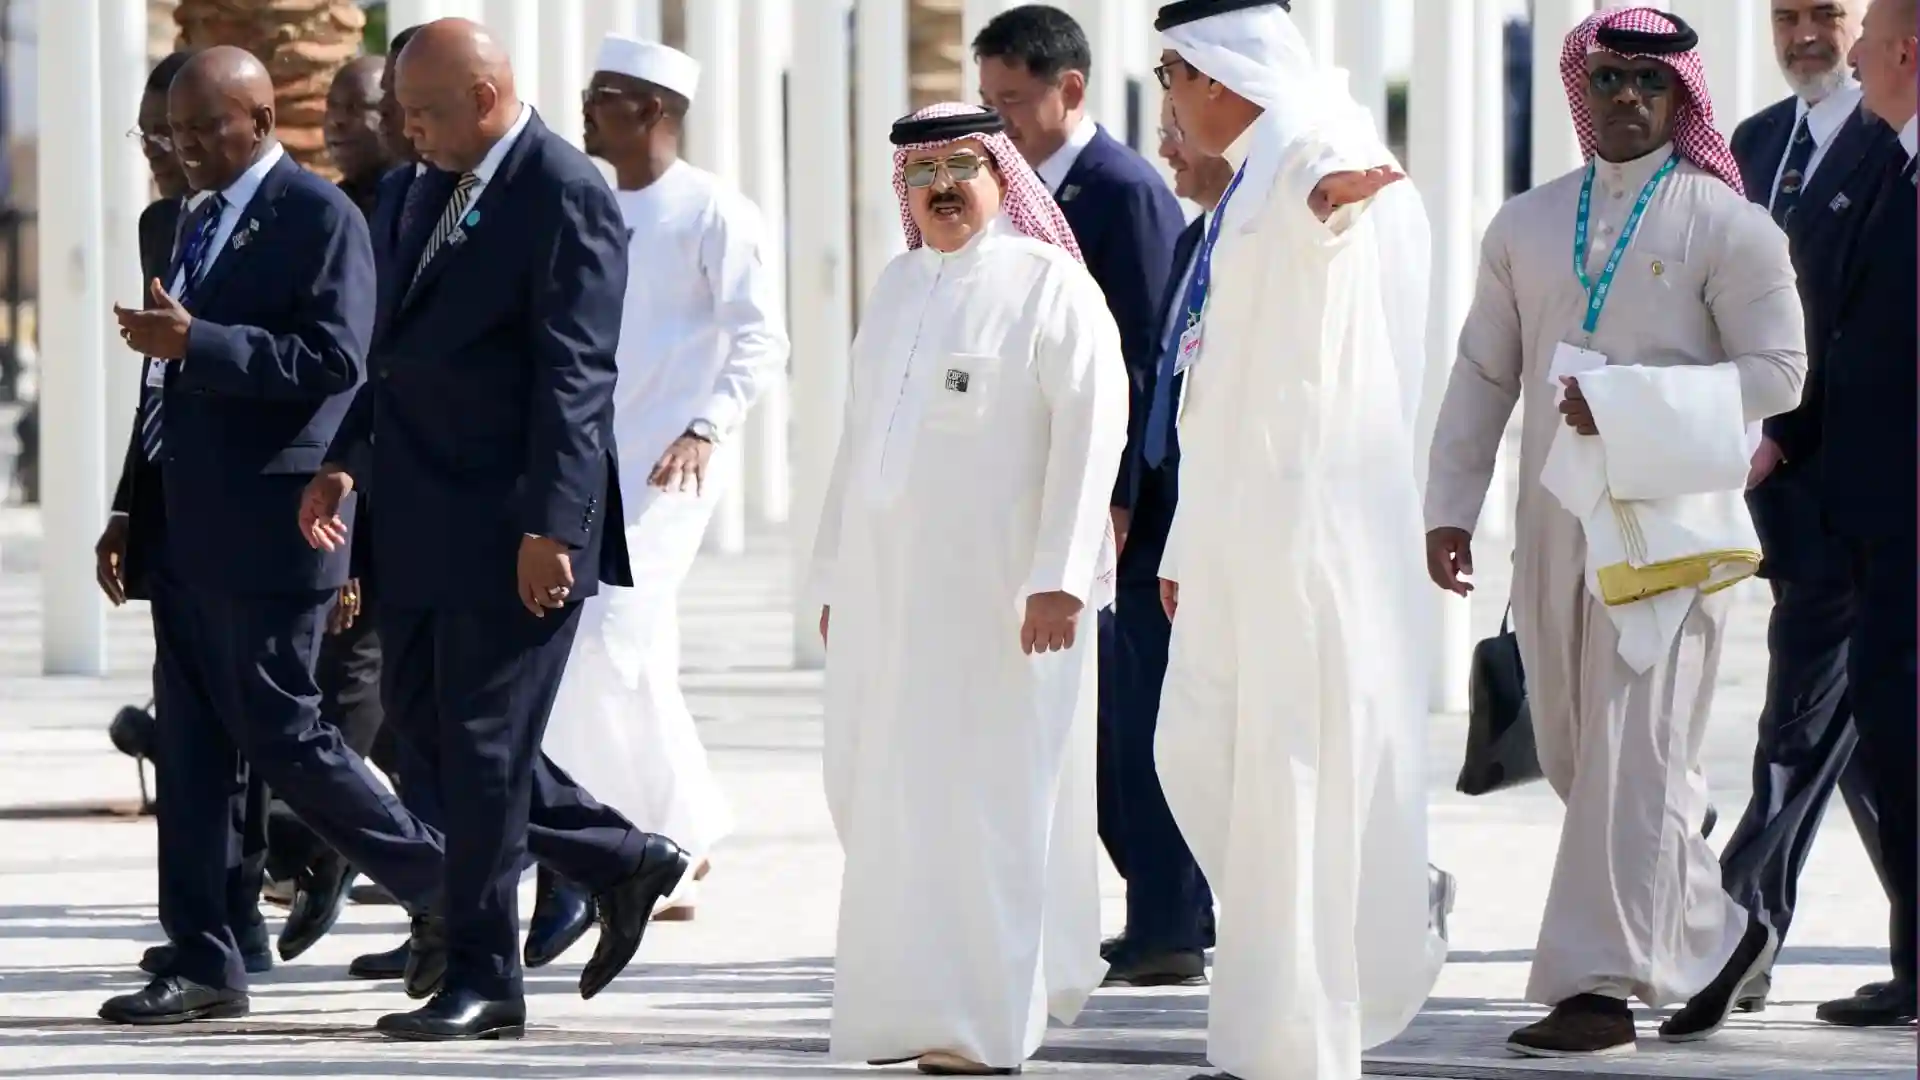 ملك البحرين في مؤتمر "كوب 28": ملتزمون بالحياد الصفري الكربوني عام 2060 وبتخفيض الانبعاثات 30% في 2035